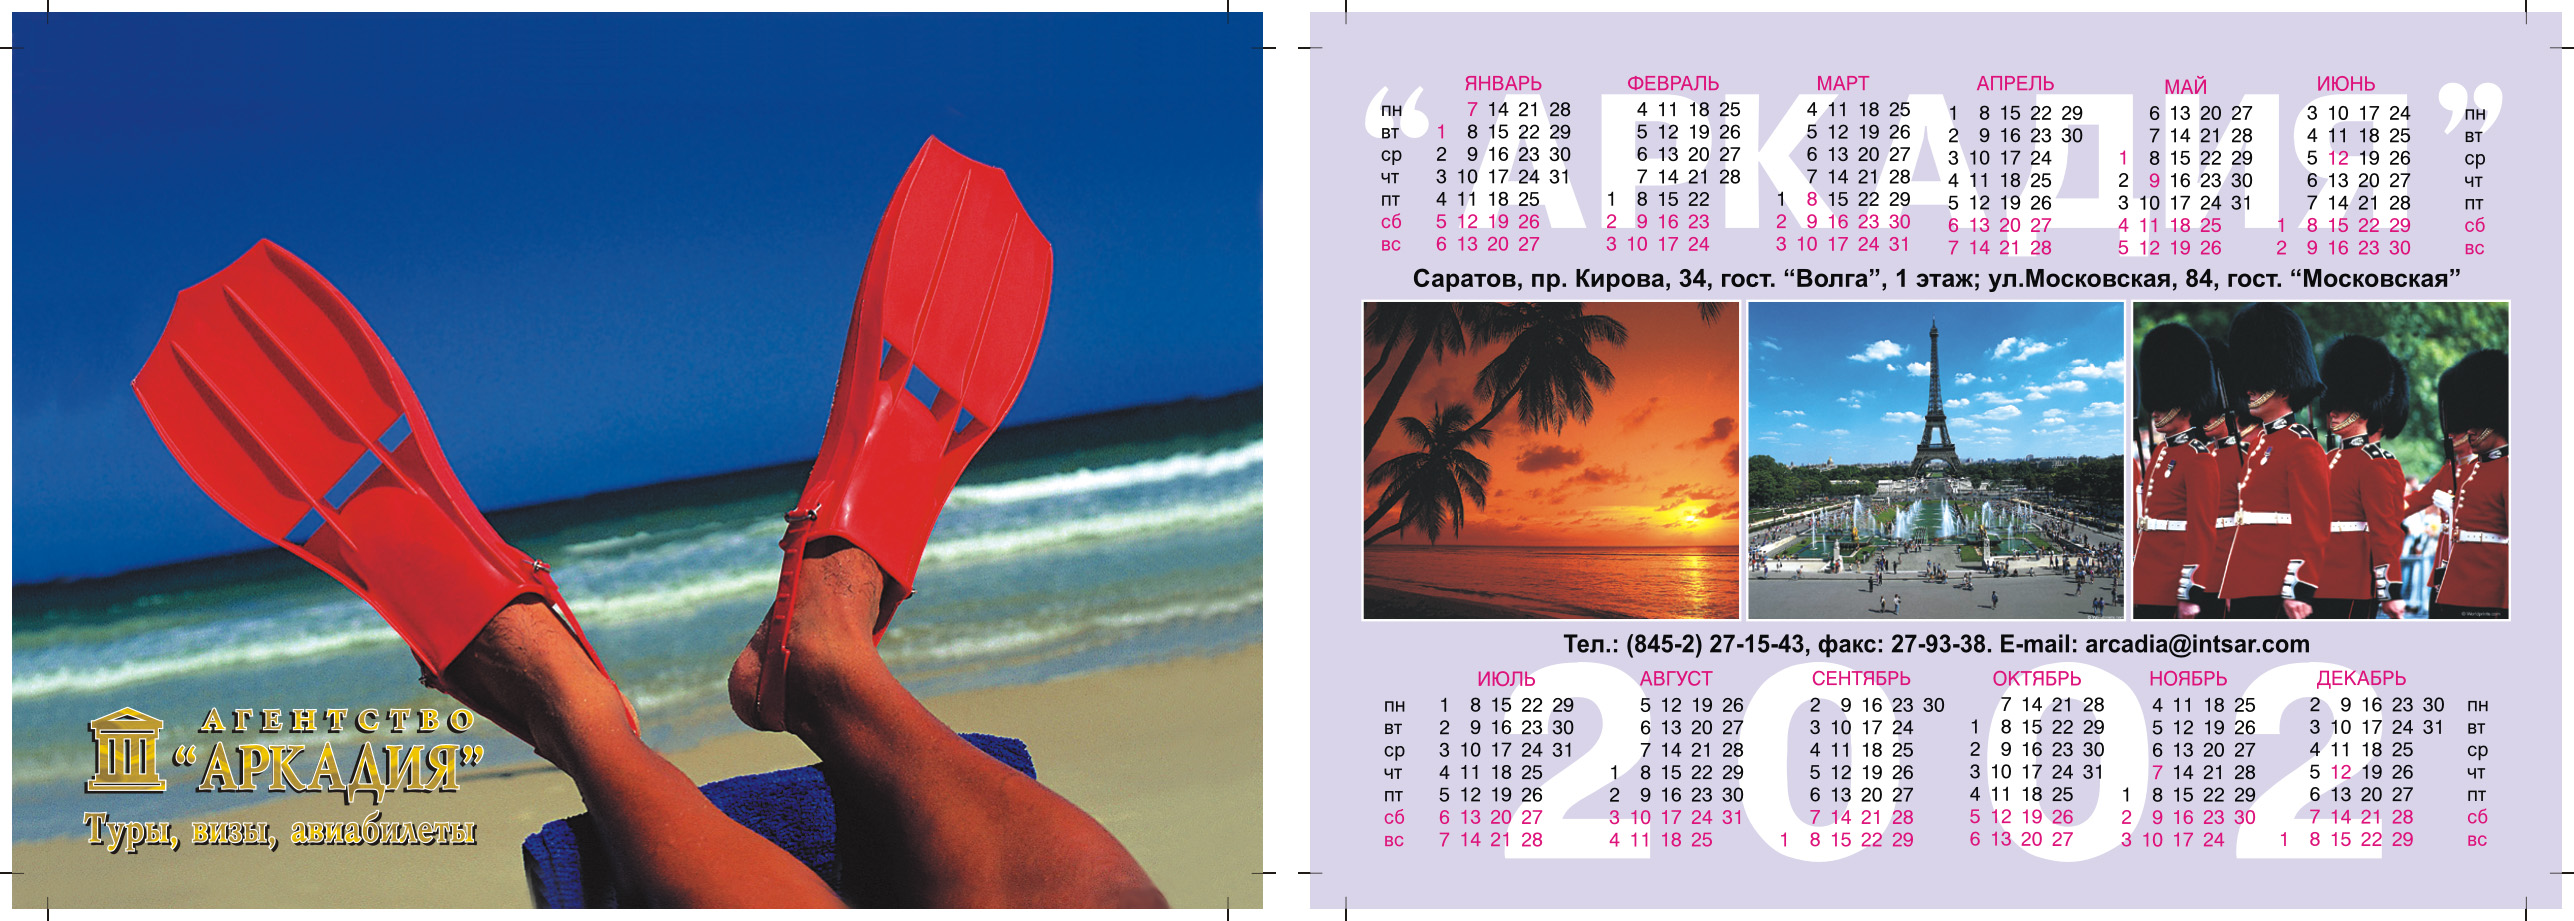 Карманный календарь туристической фирмы